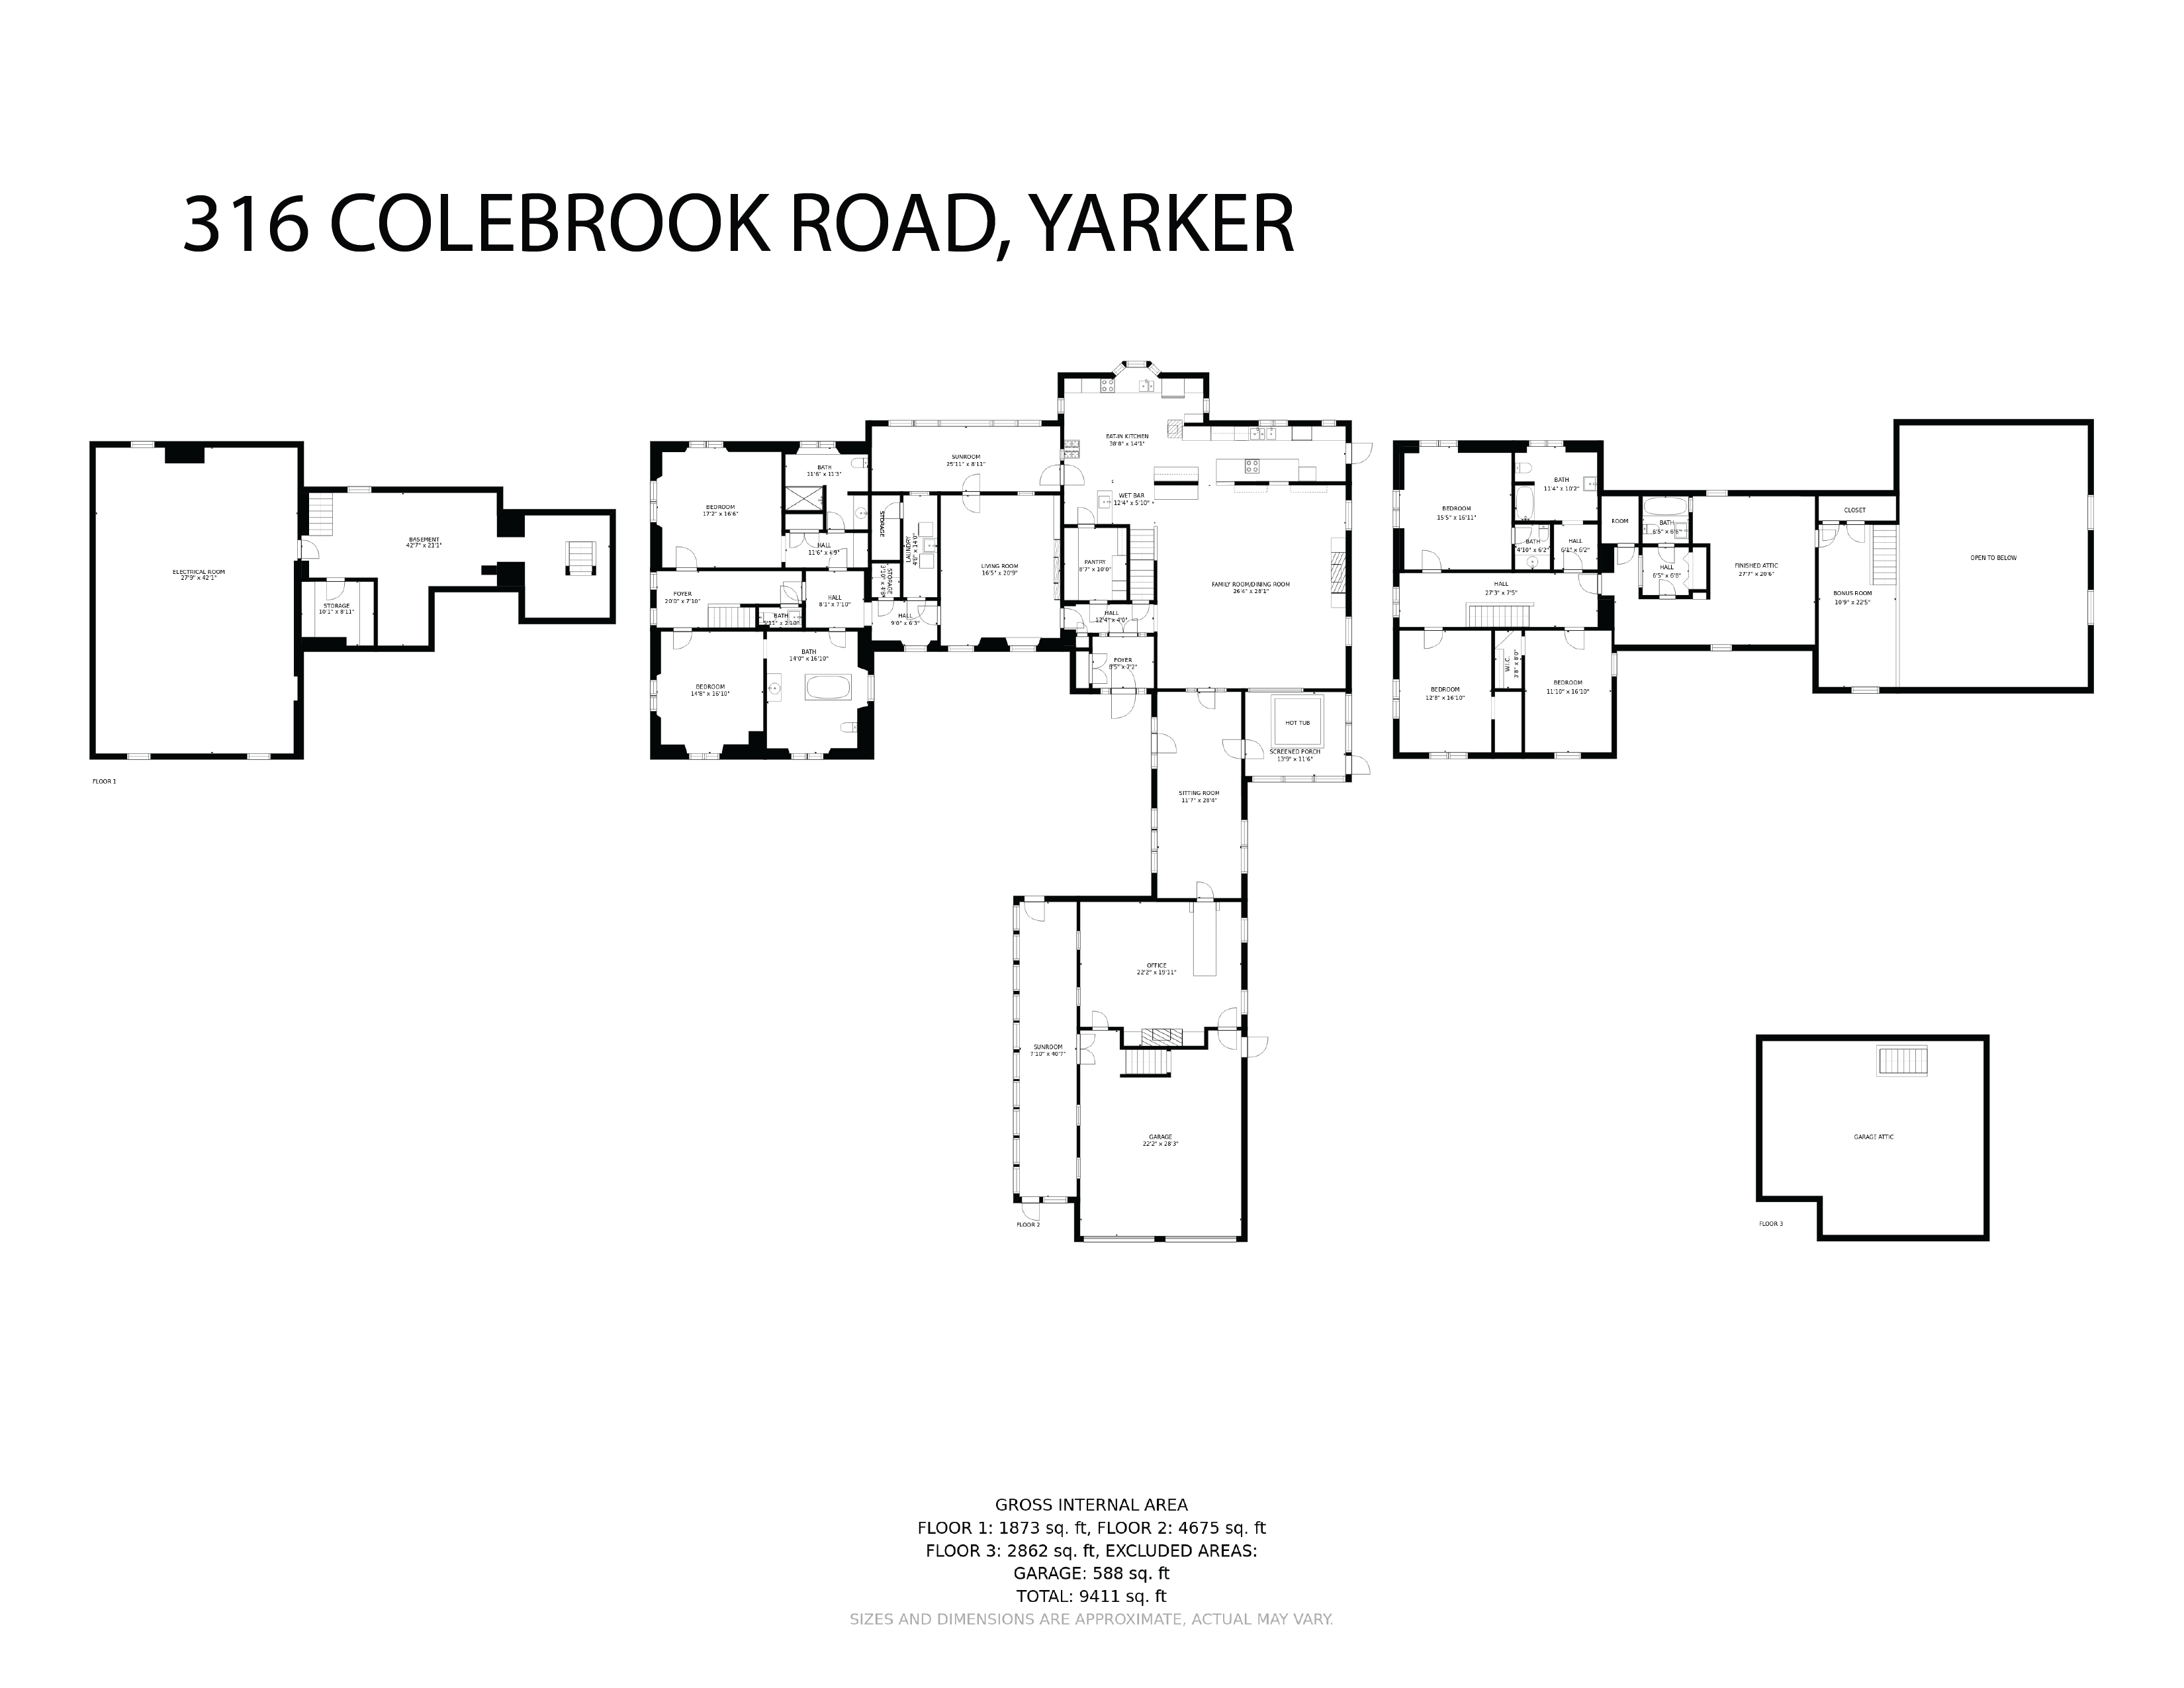 316 Colebrook Road floorplan